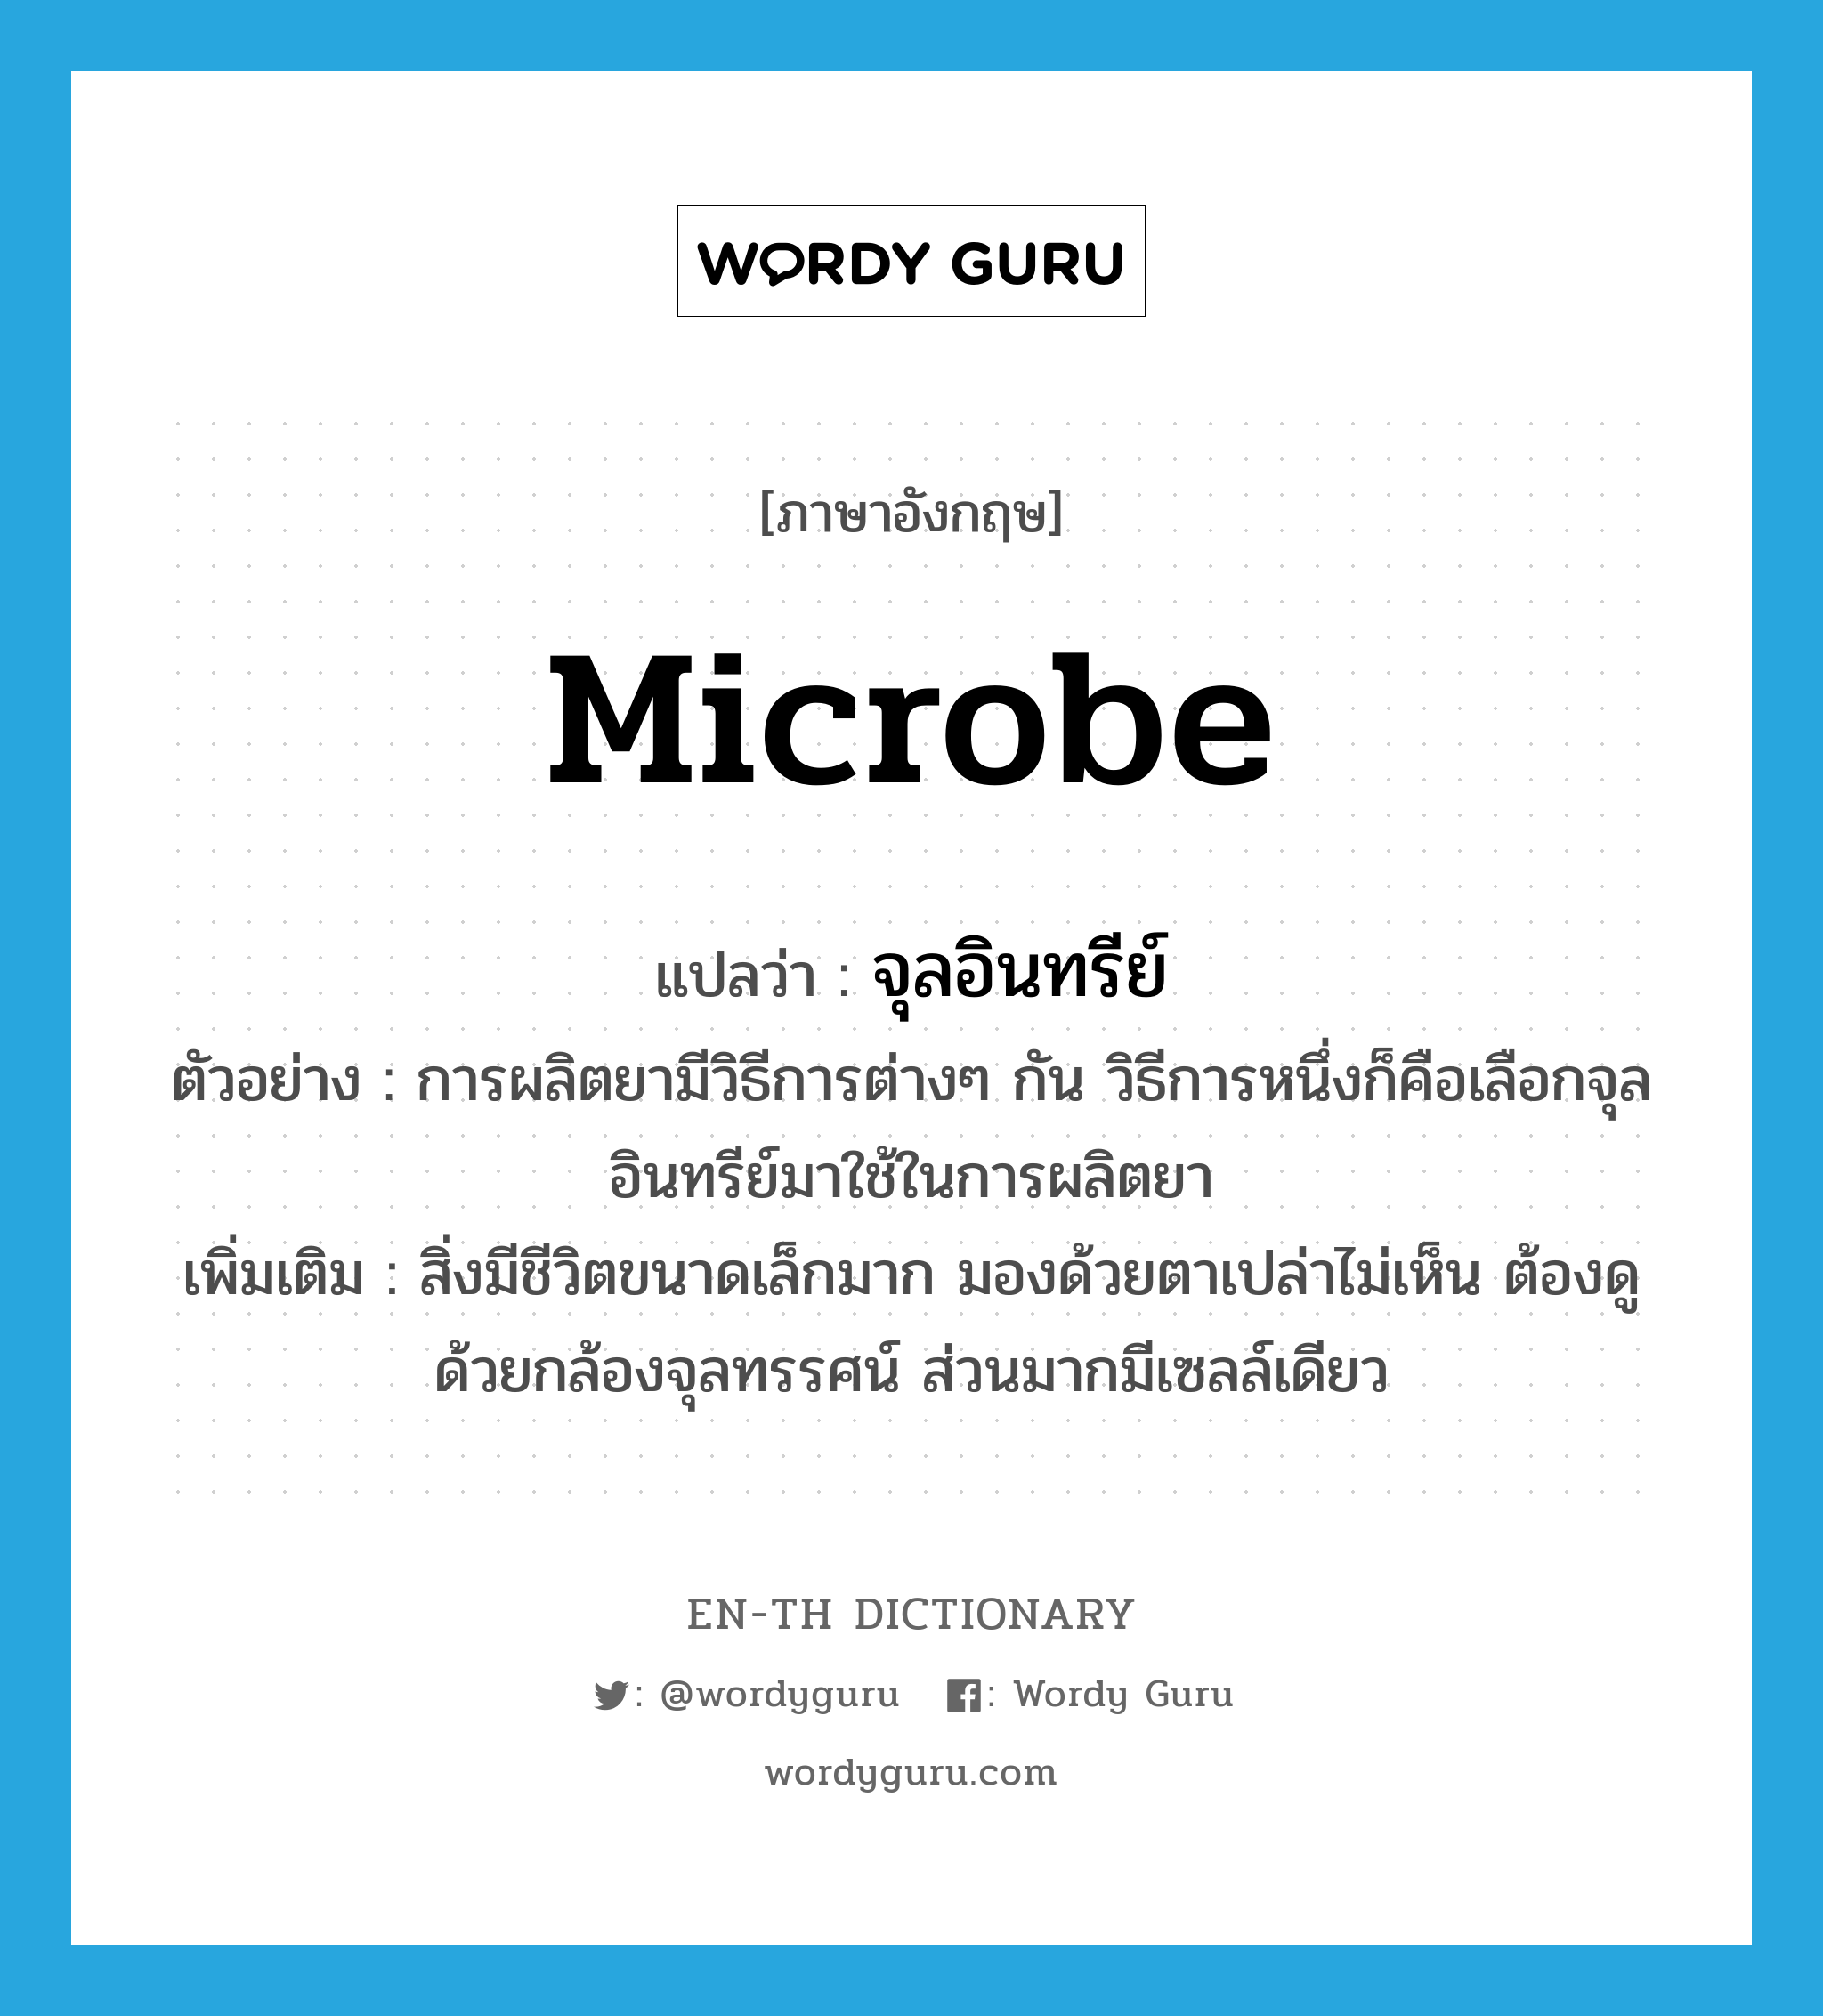 microbe แปลว่า?, คำศัพท์ภาษาอังกฤษ microbe แปลว่า จุลอินทรีย์ ประเภท N ตัวอย่าง การผลิตยามีวิธีการต่างๆ กัน วิธีการหนึ่งก็คือเลือกจุลอินทรีย์มาใช้ในการผลิตยา เพิ่มเติม สิ่งมีชีวิตขนาดเล็กมาก มองด้วยตาเปล่าไม่เห็น ต้องดูด้วยกล้องจุลทรรศน์ ส่วนมากมีเซลล์เดียว หมวด N